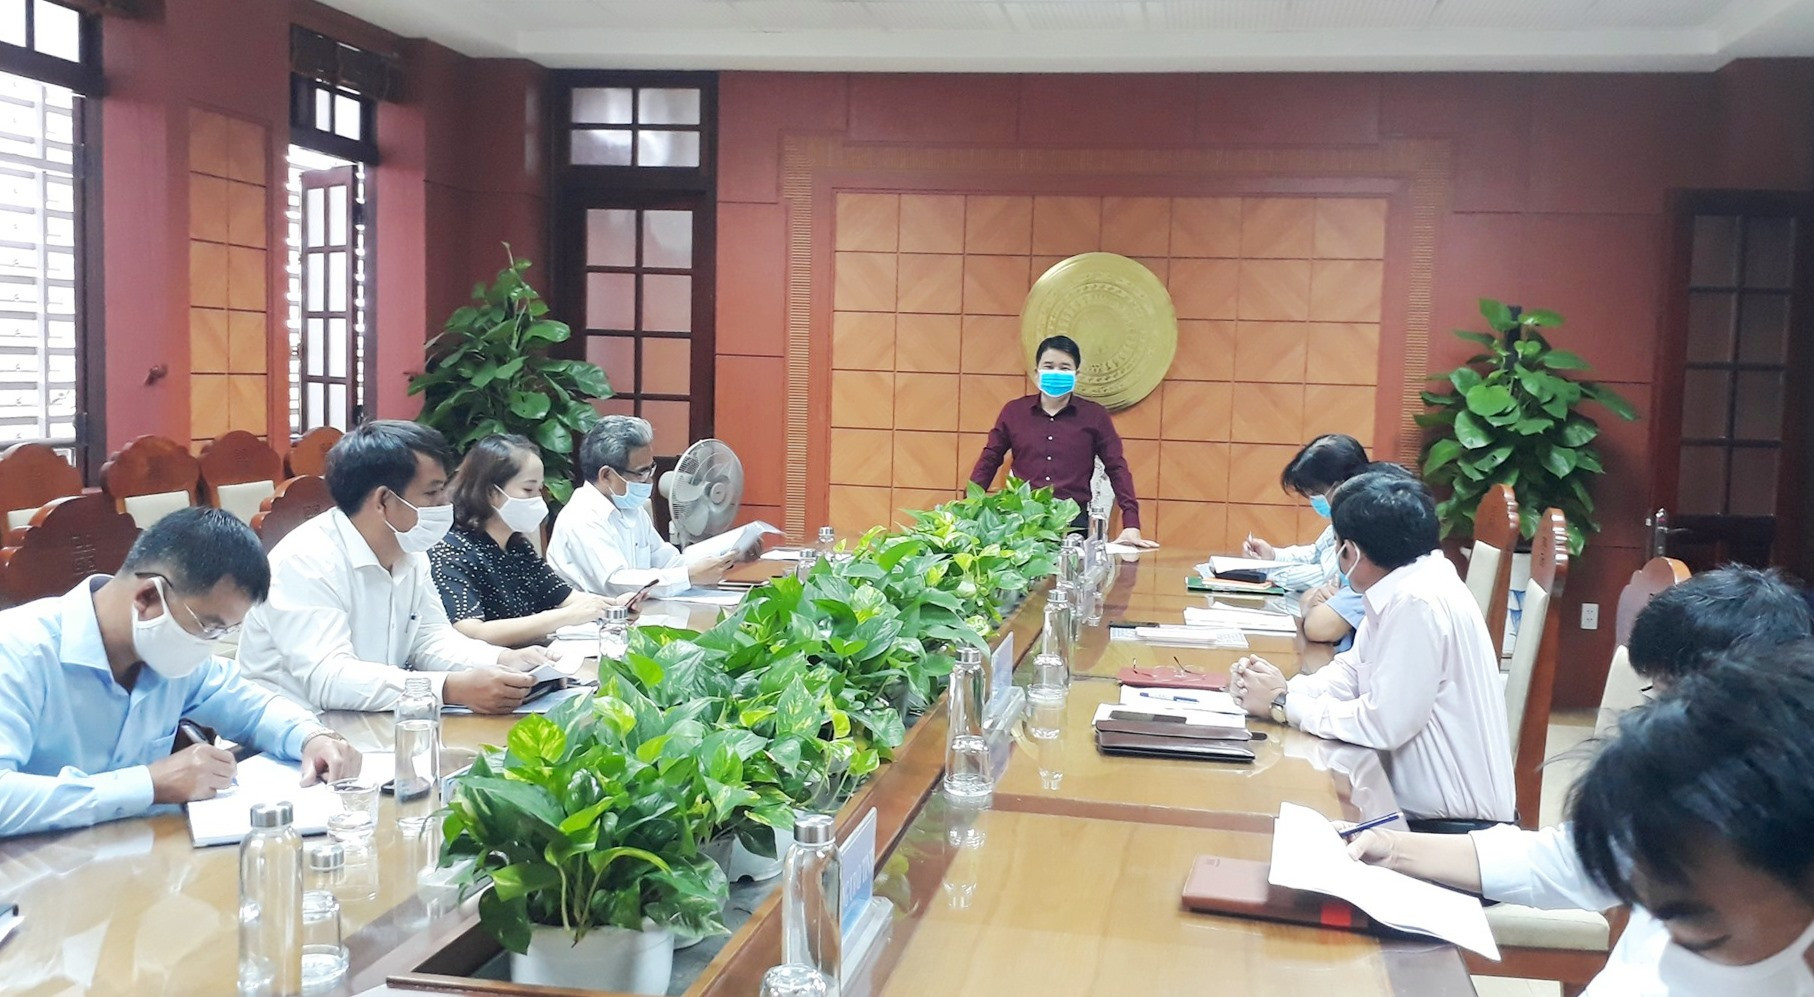 Phó Chủ tịch UBND tỉnh Trần Văn Tân yêu cầu khẩn trương thực hiện nghiêm túc, đầy đủ các biện pháp phòng chống dịch để học sinh đi học an toàn. Ảnh: X.P